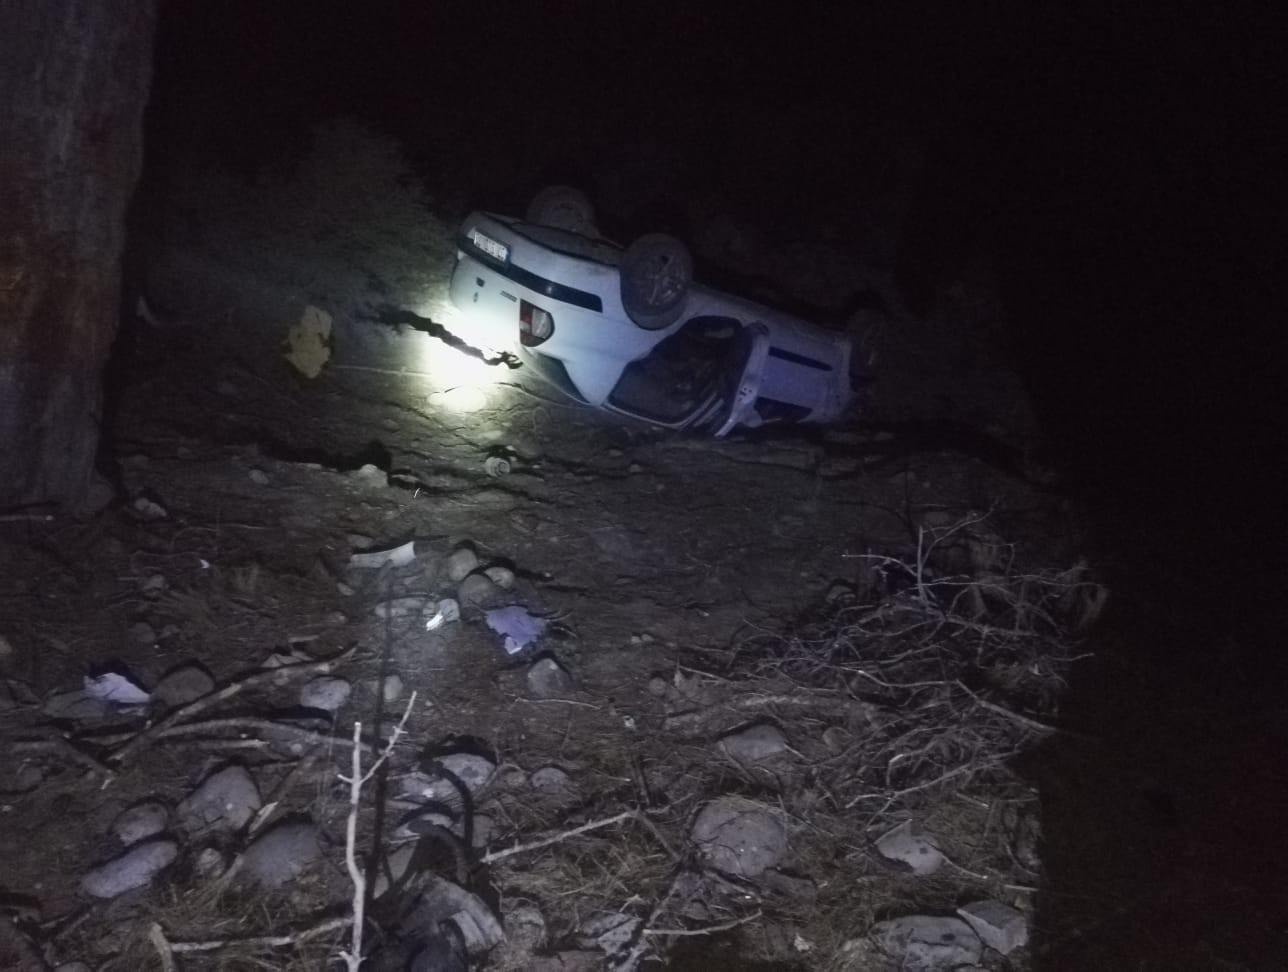 Antalya’da otomobil şarampole devrildi: 1 ölü, 4 yaralı #antalya